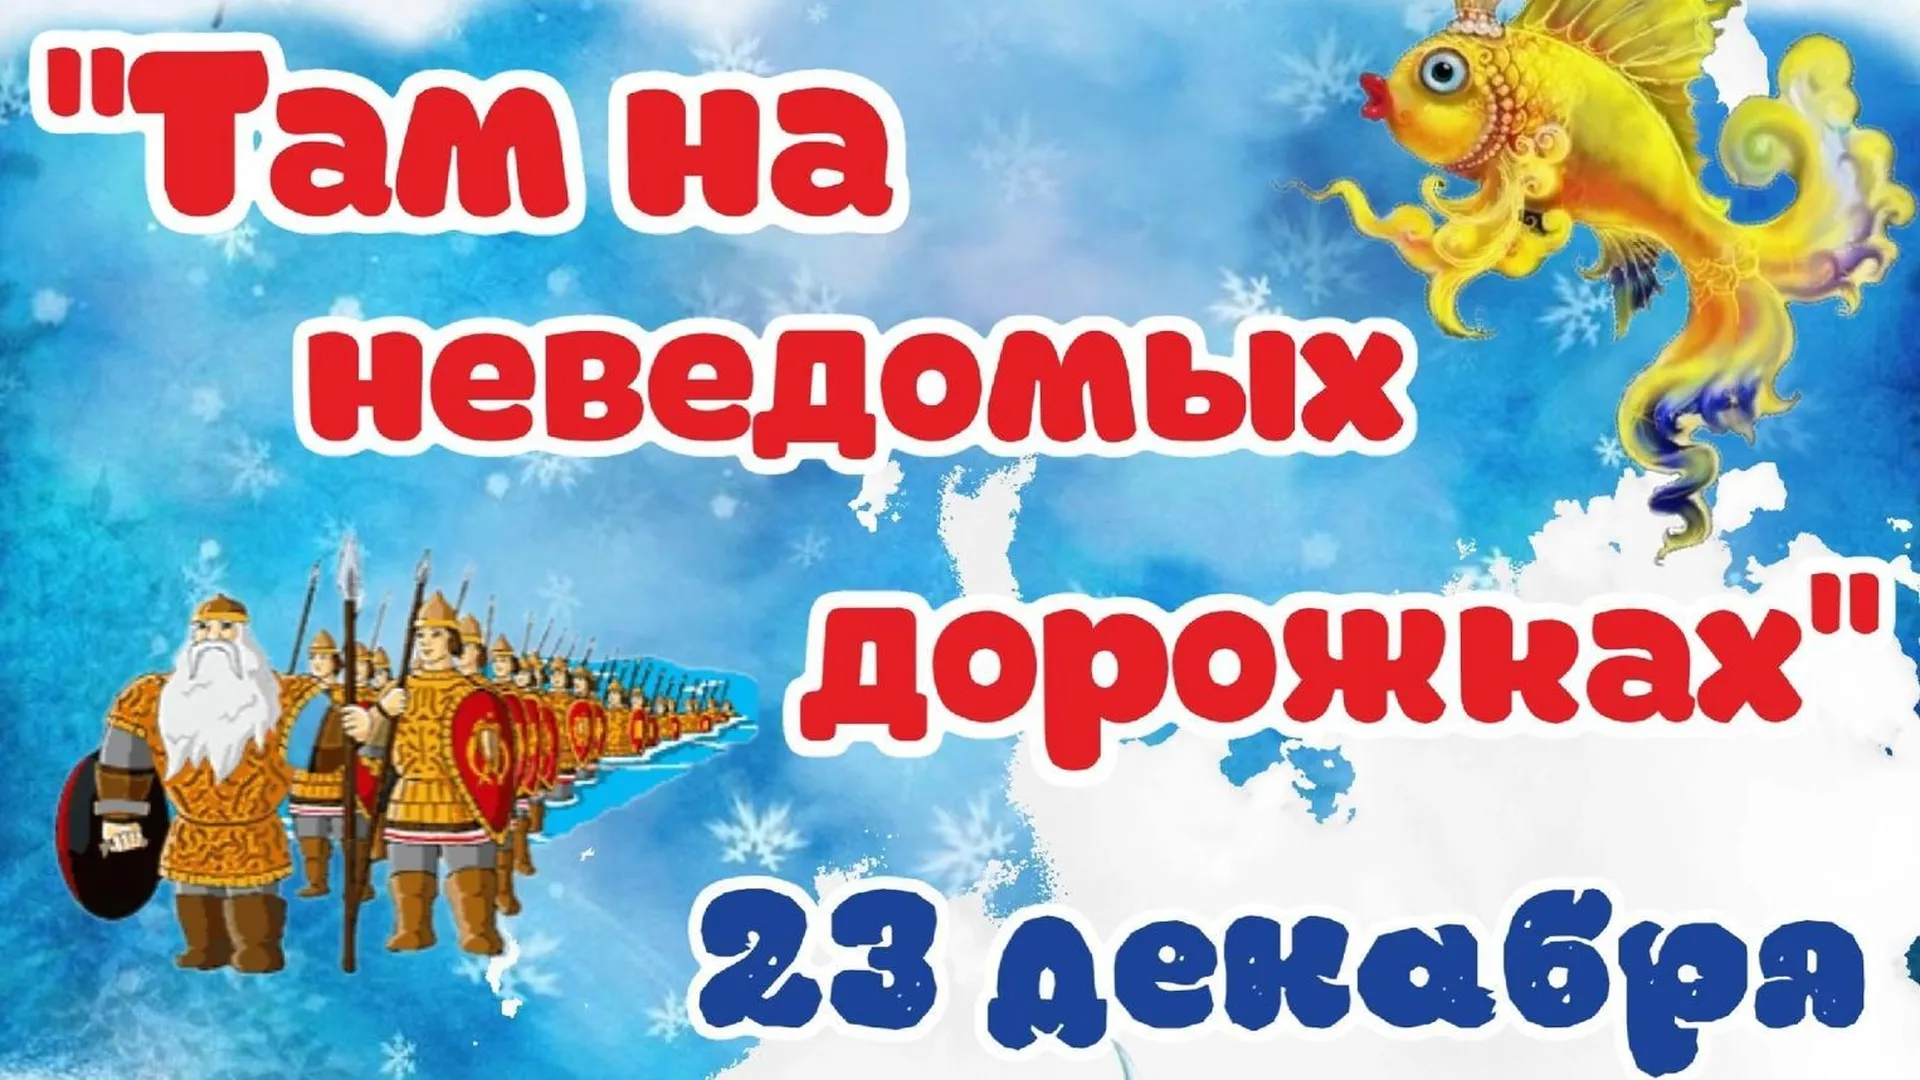 В ДК Одинцовского округа 23 декабря покажут новогодний спектакль по мотивам сказок Пушкина